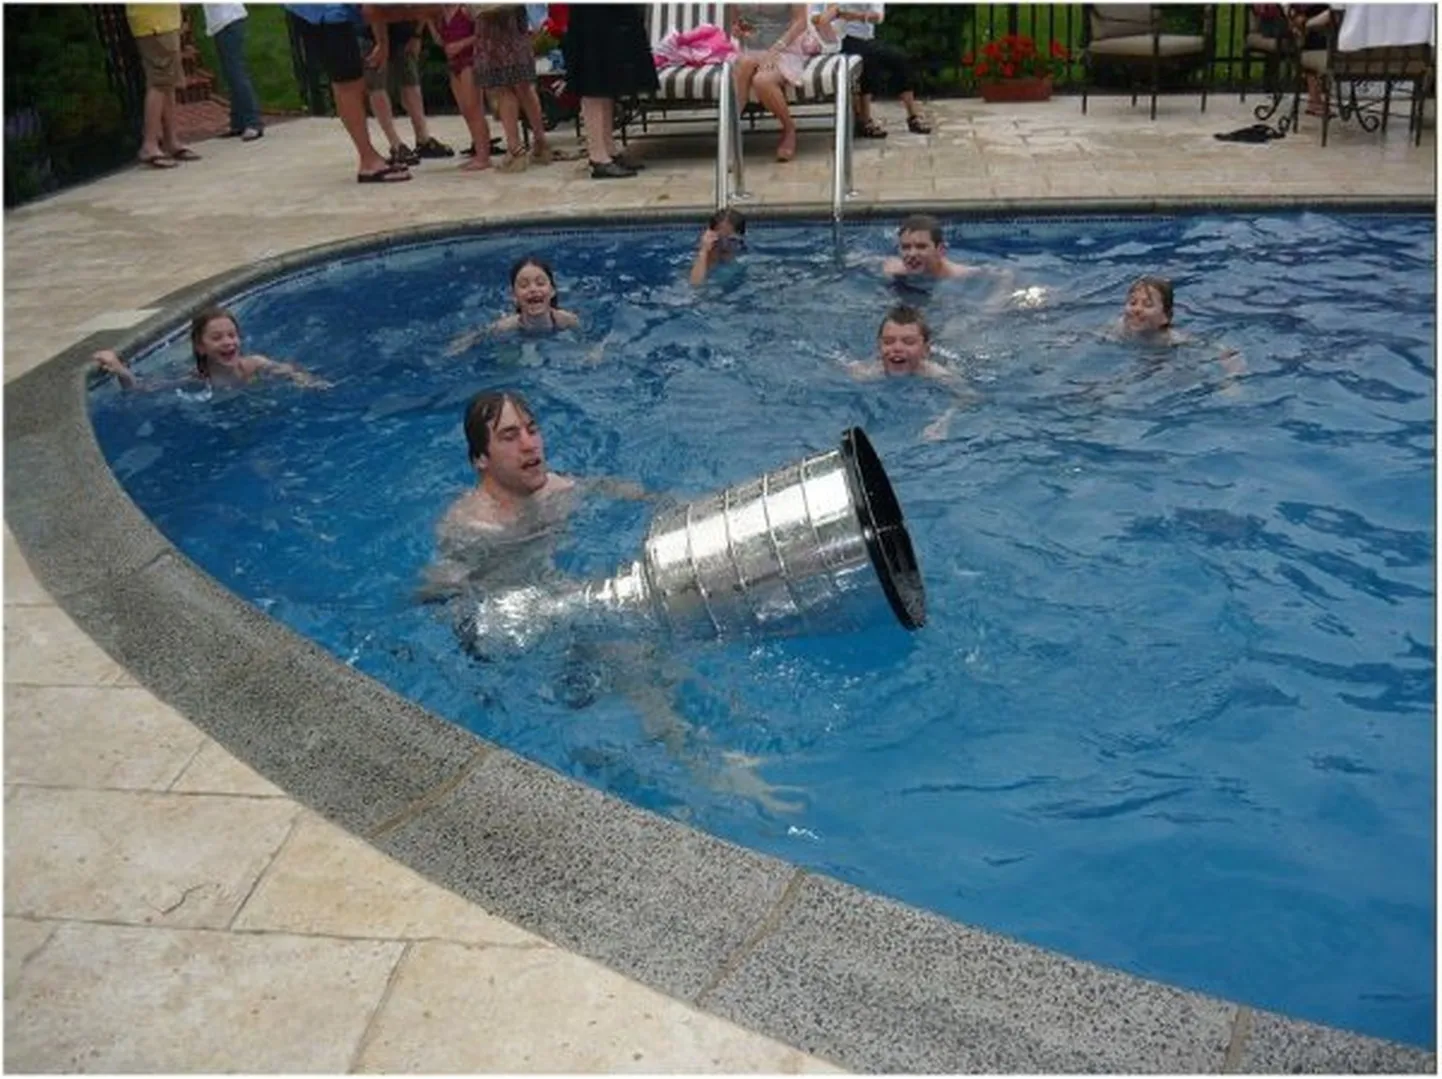 Arī NHL galvenā trofeja Stenlija kauss devies atvaļinājumā.